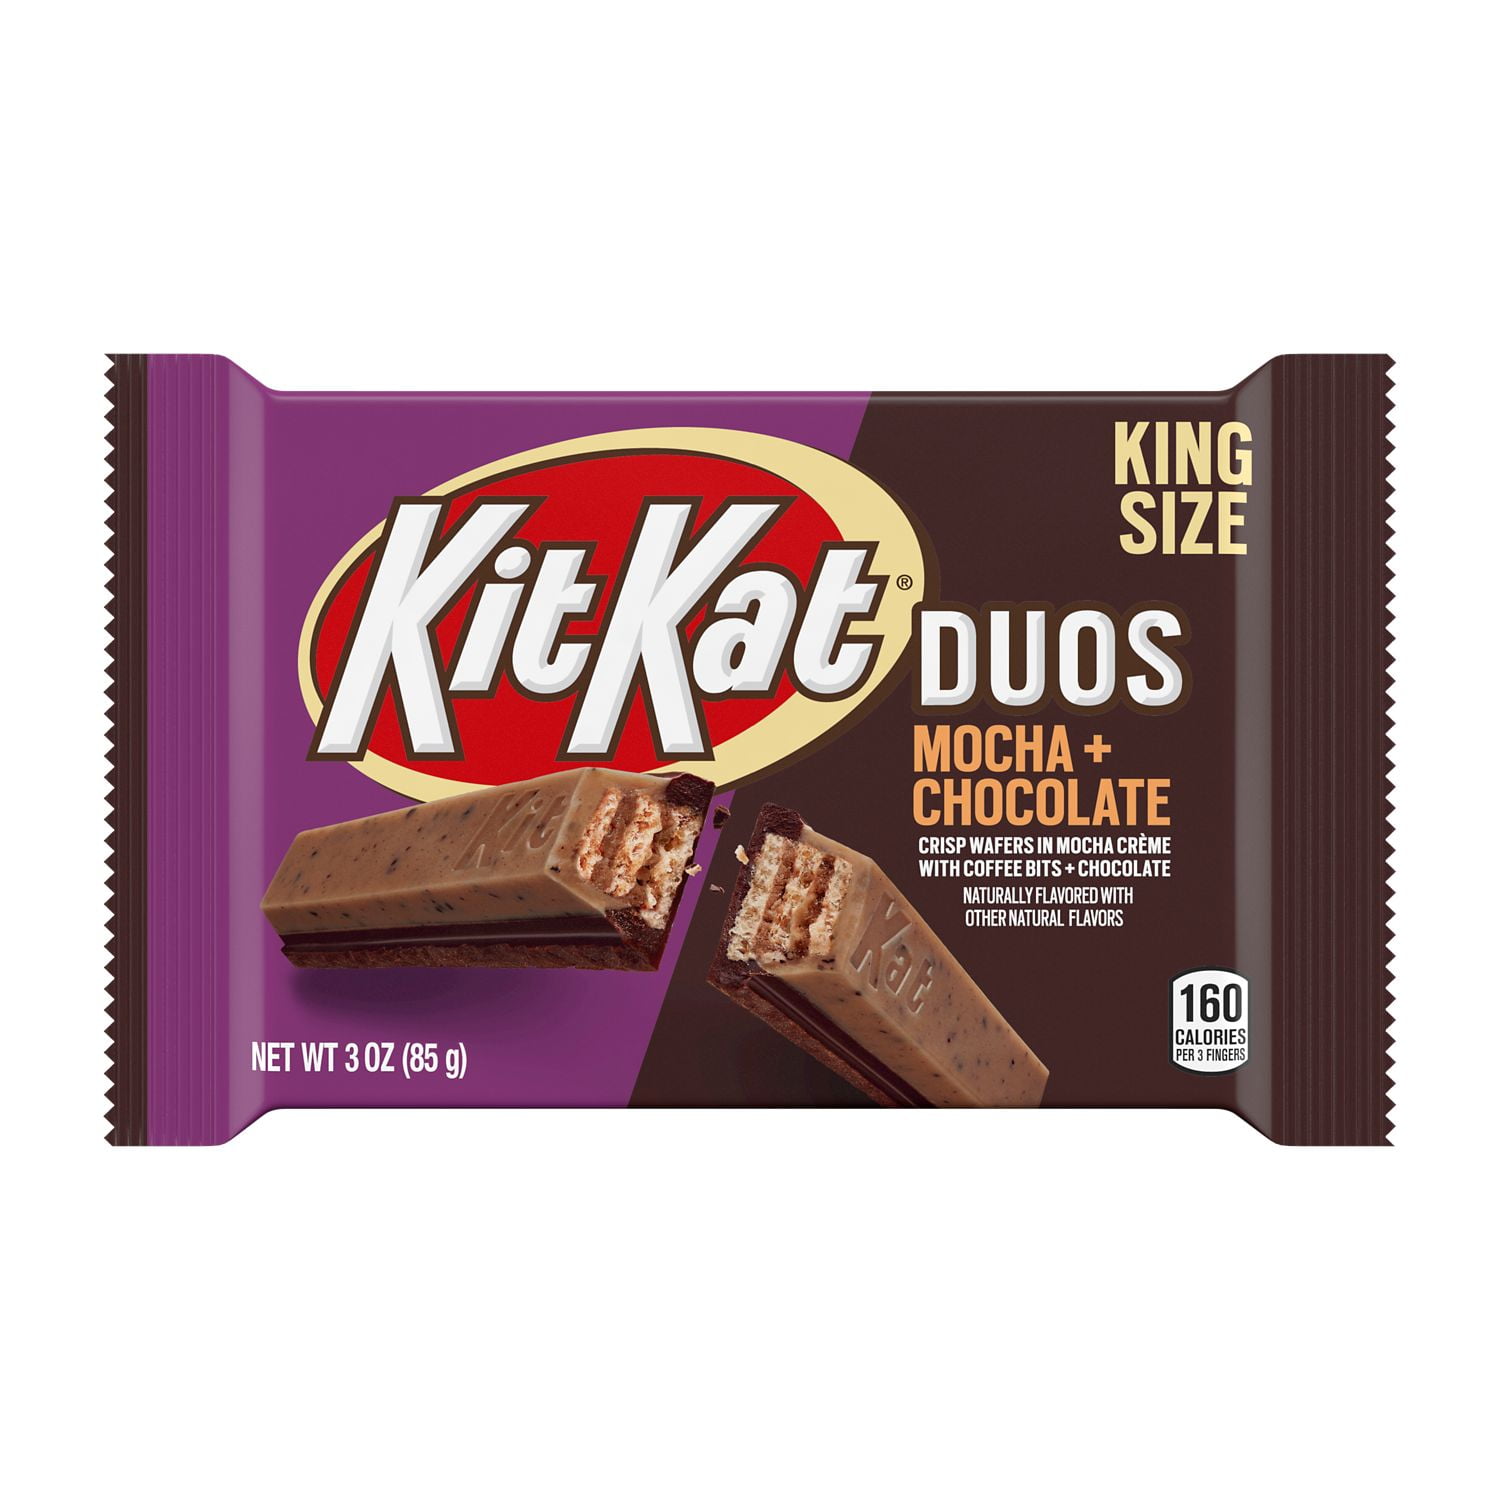 Шоколадка king. Kit kat King Size Duo. King Size шоколадка. Kit kat шоколад. Король шоколадок.